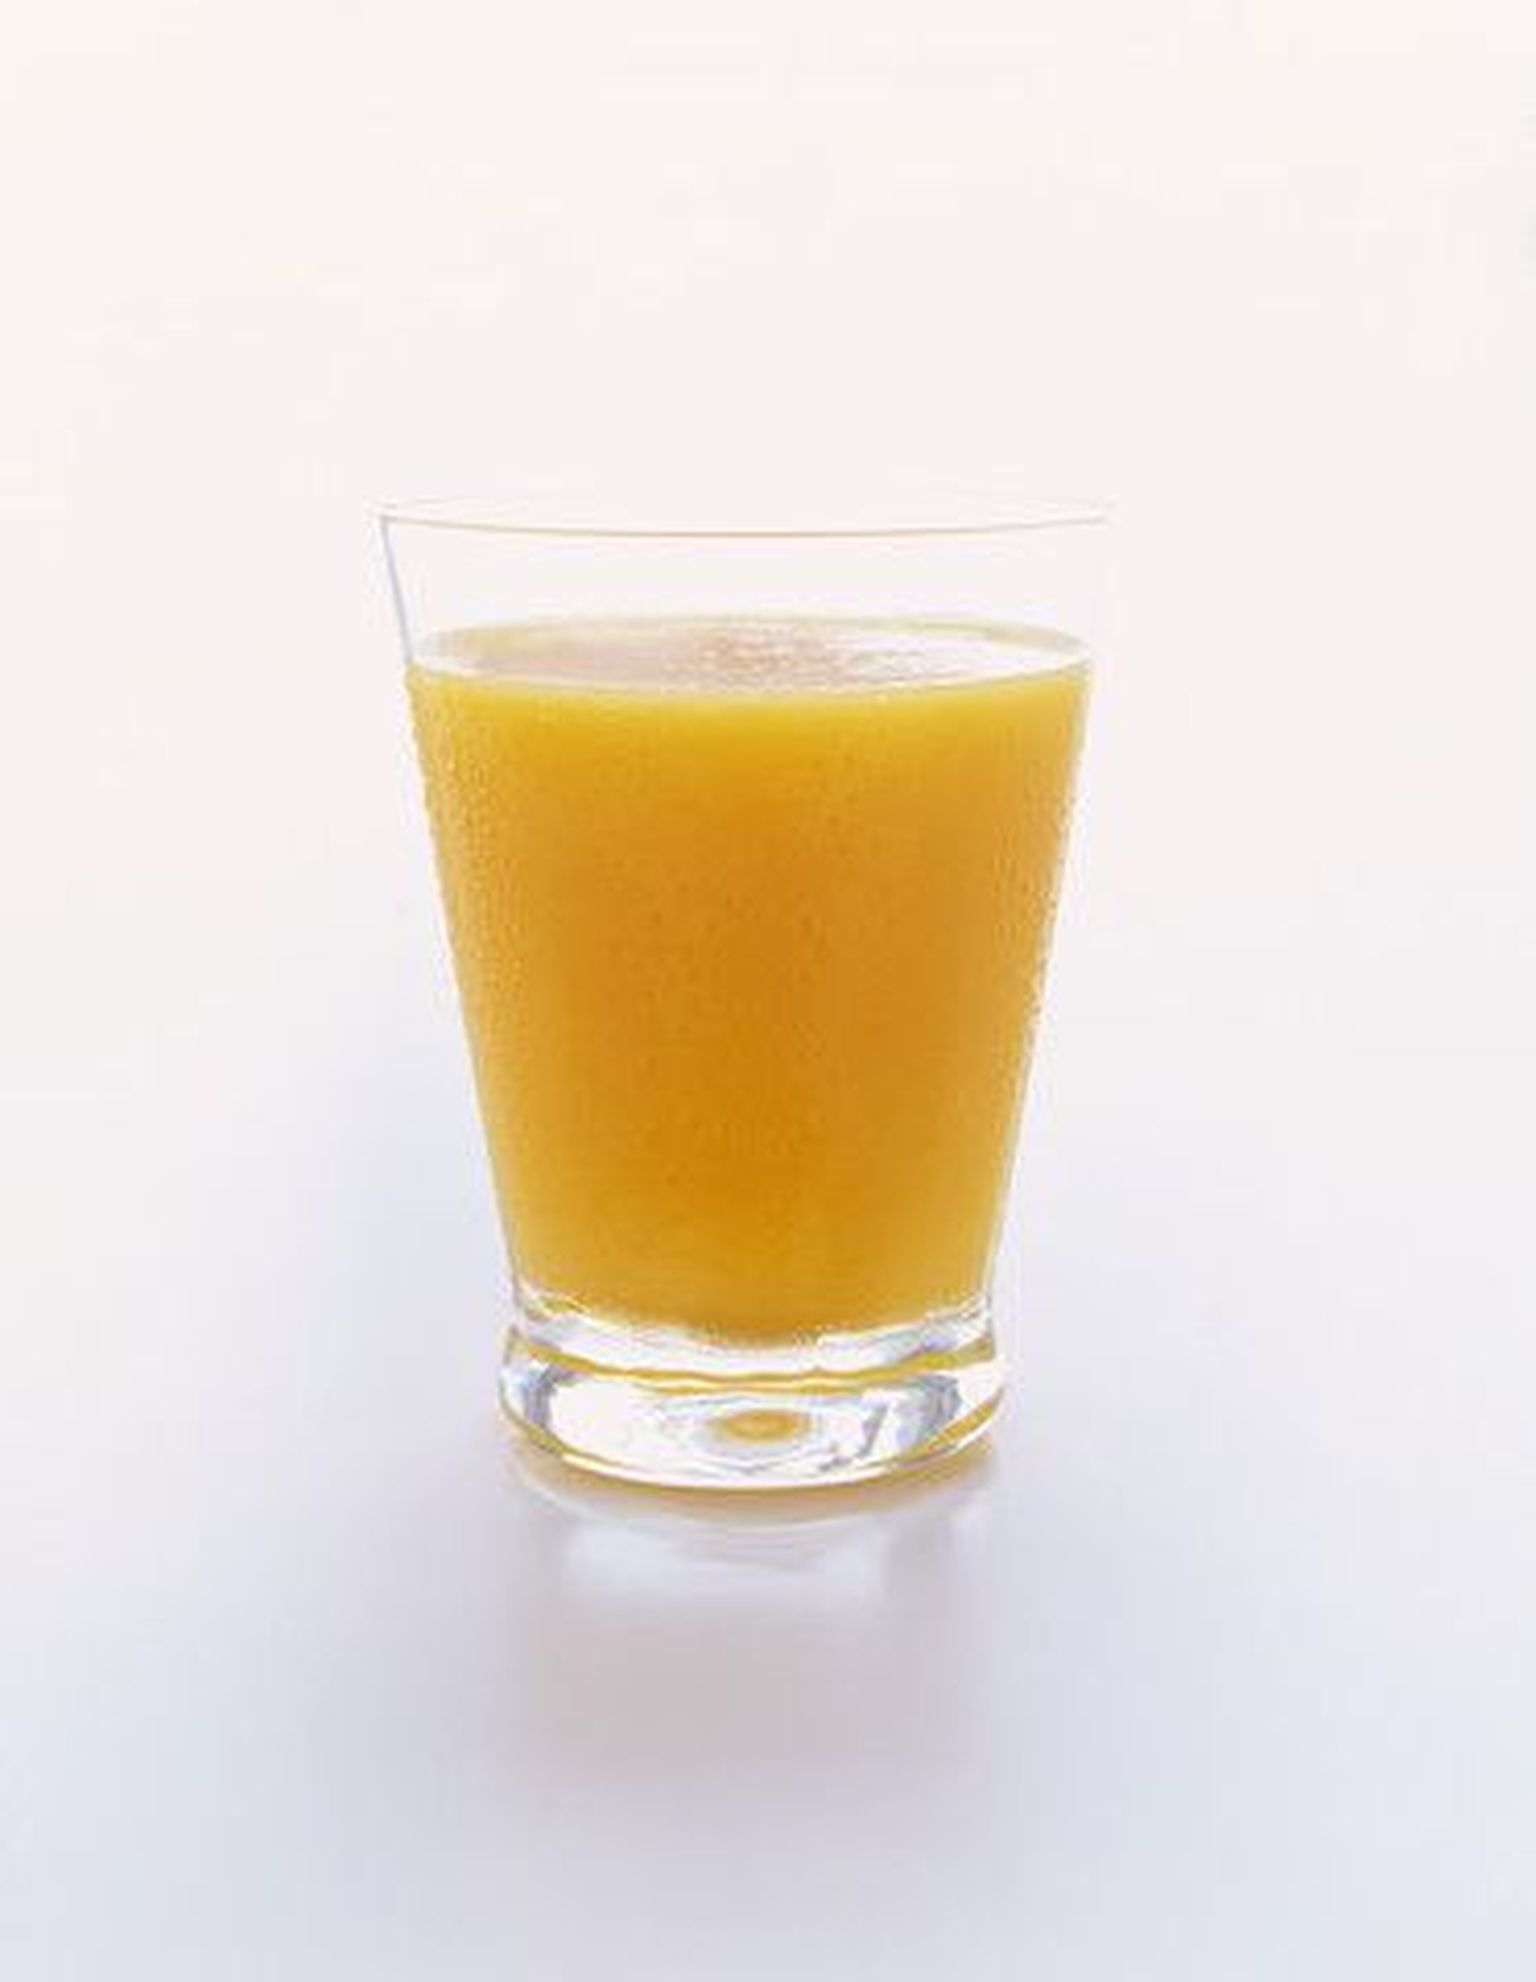 Апельсиновый сок. Снимок иллюстративный